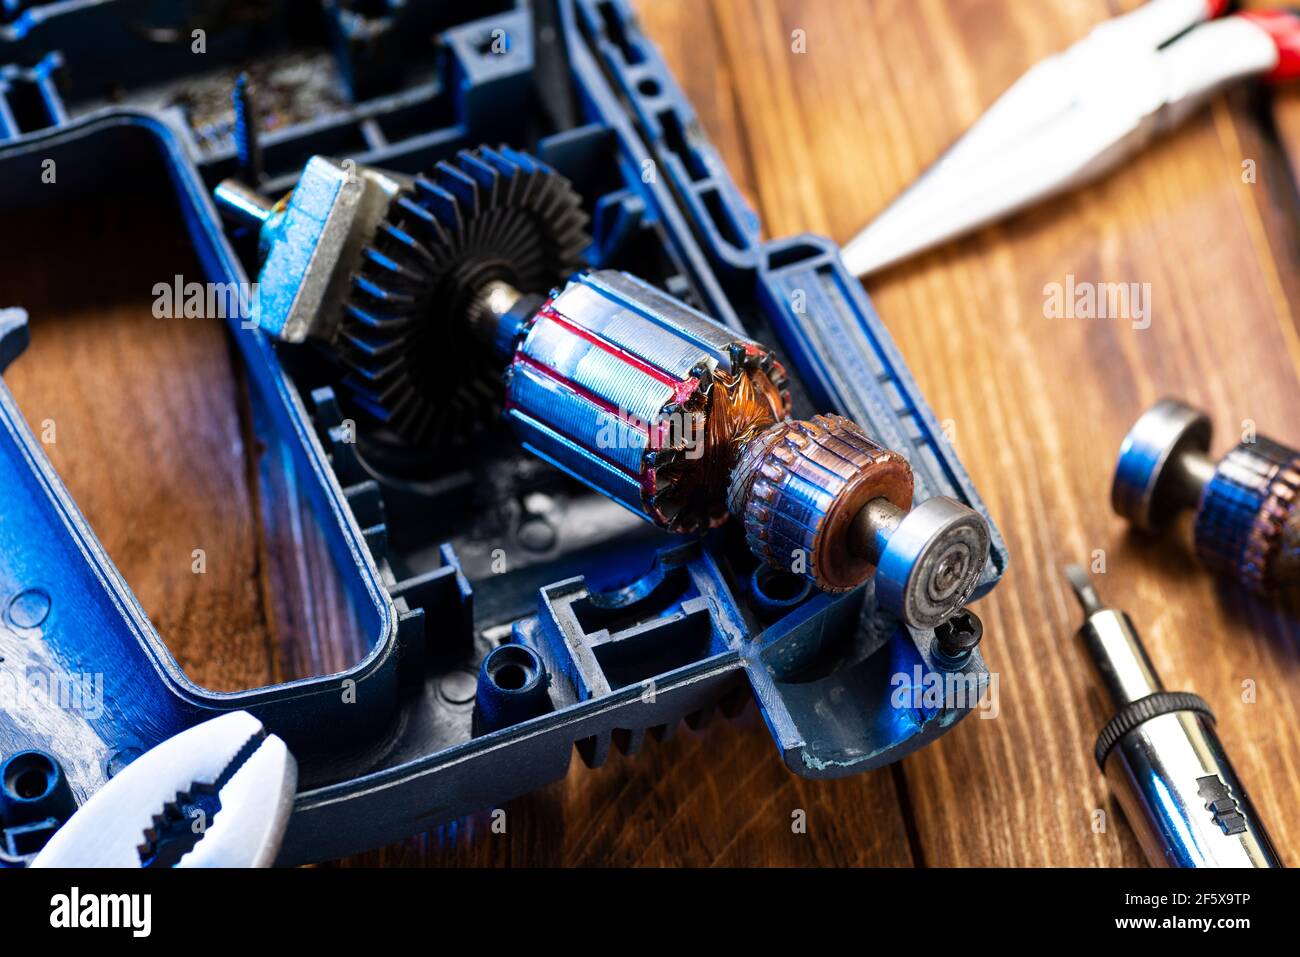 Reparatur von Elektrowerkzeugen. Details zu Elektrogeräten und  Reparaturwerkzeugen auf einem Holztisch in einer Werkstatt Stockfotografie  - Alamy